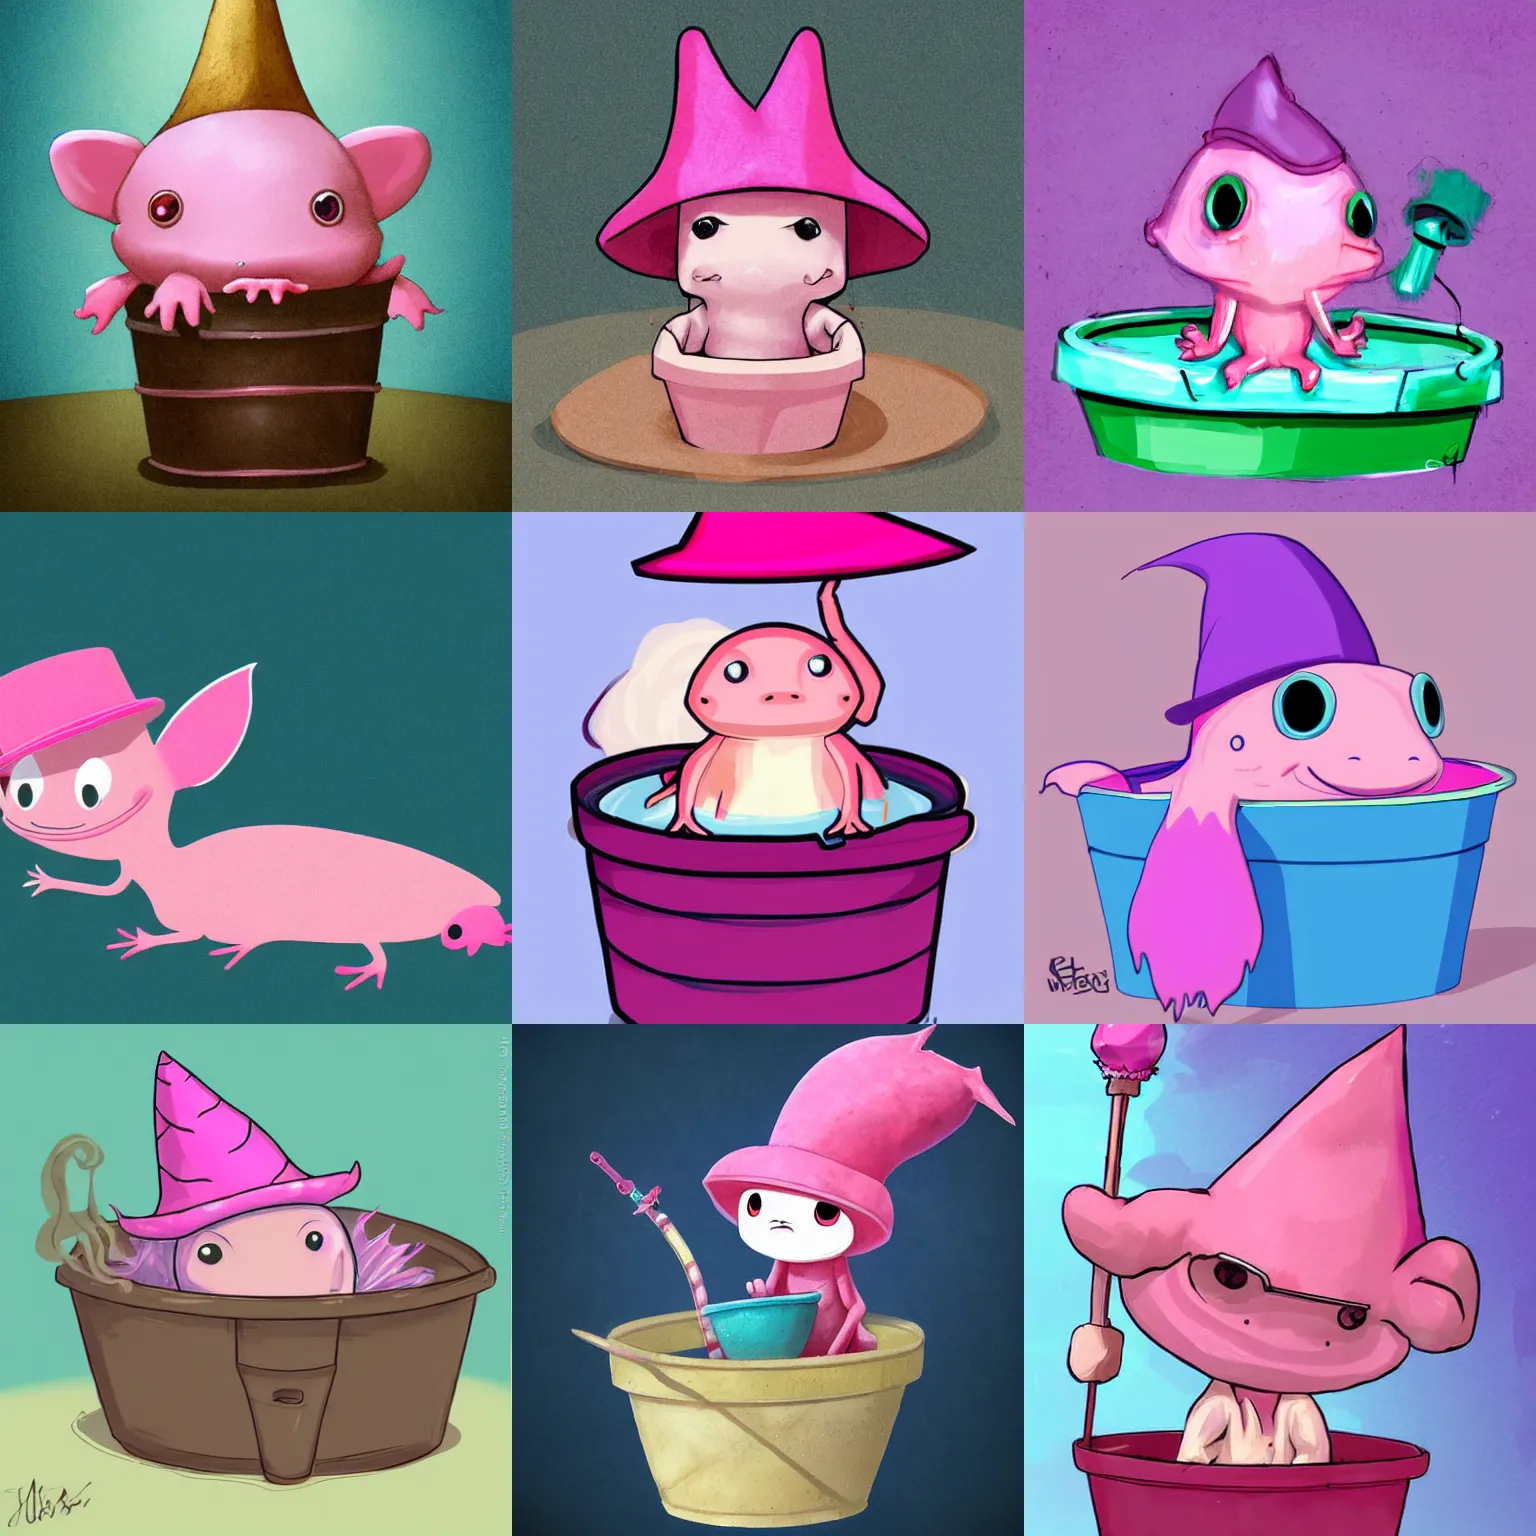 Prompt: pink axolotl in a bucket wearing a wizard hat, cartoon, cute, trending on artstation, digital art